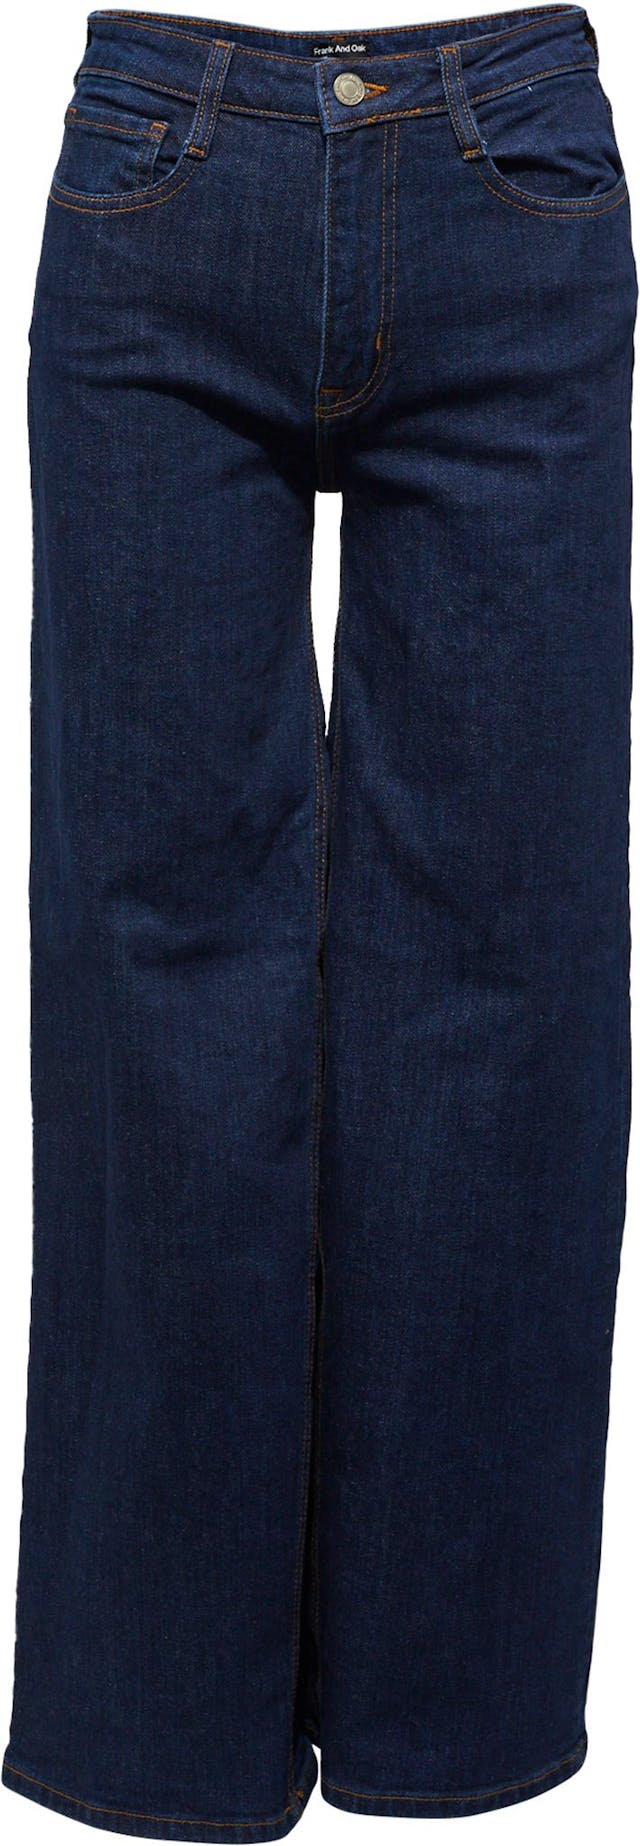 Image de produit pour Pantalon en denim à jambe large Nina - Femme